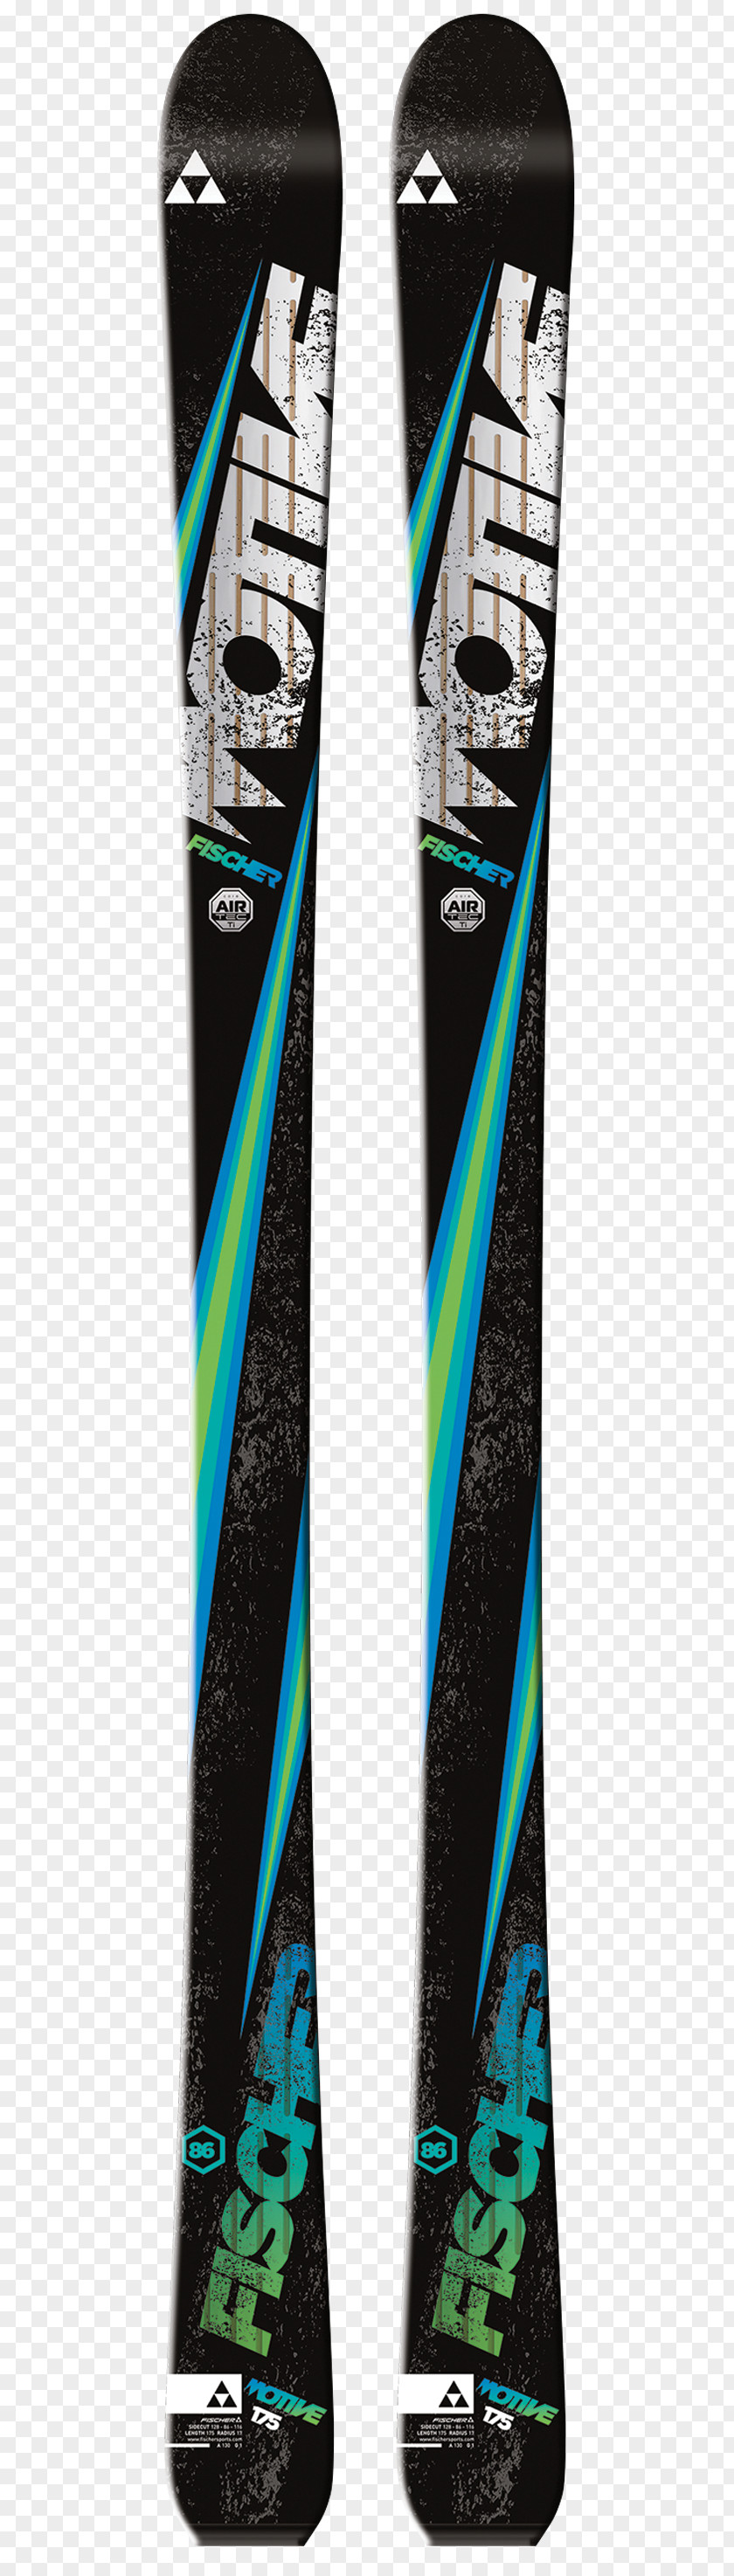 Skiing Fischer Alpine Sporting Goods PNG